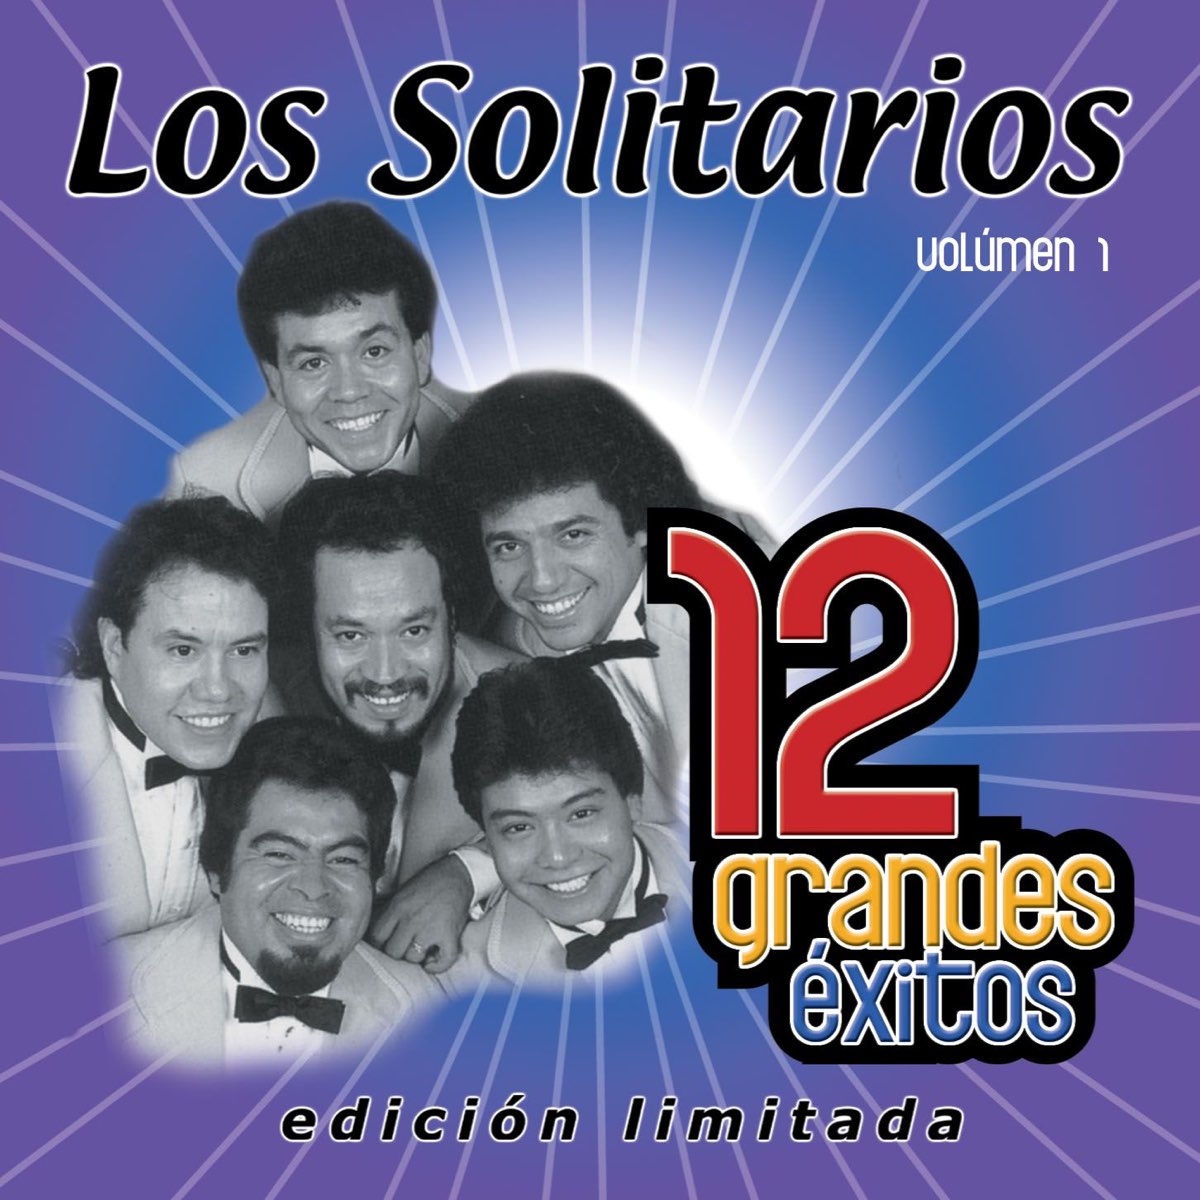 ‎Los Solitarios: 12 Grandes Éxitos, Vol. 1 av Los Solitarios på Apple Music